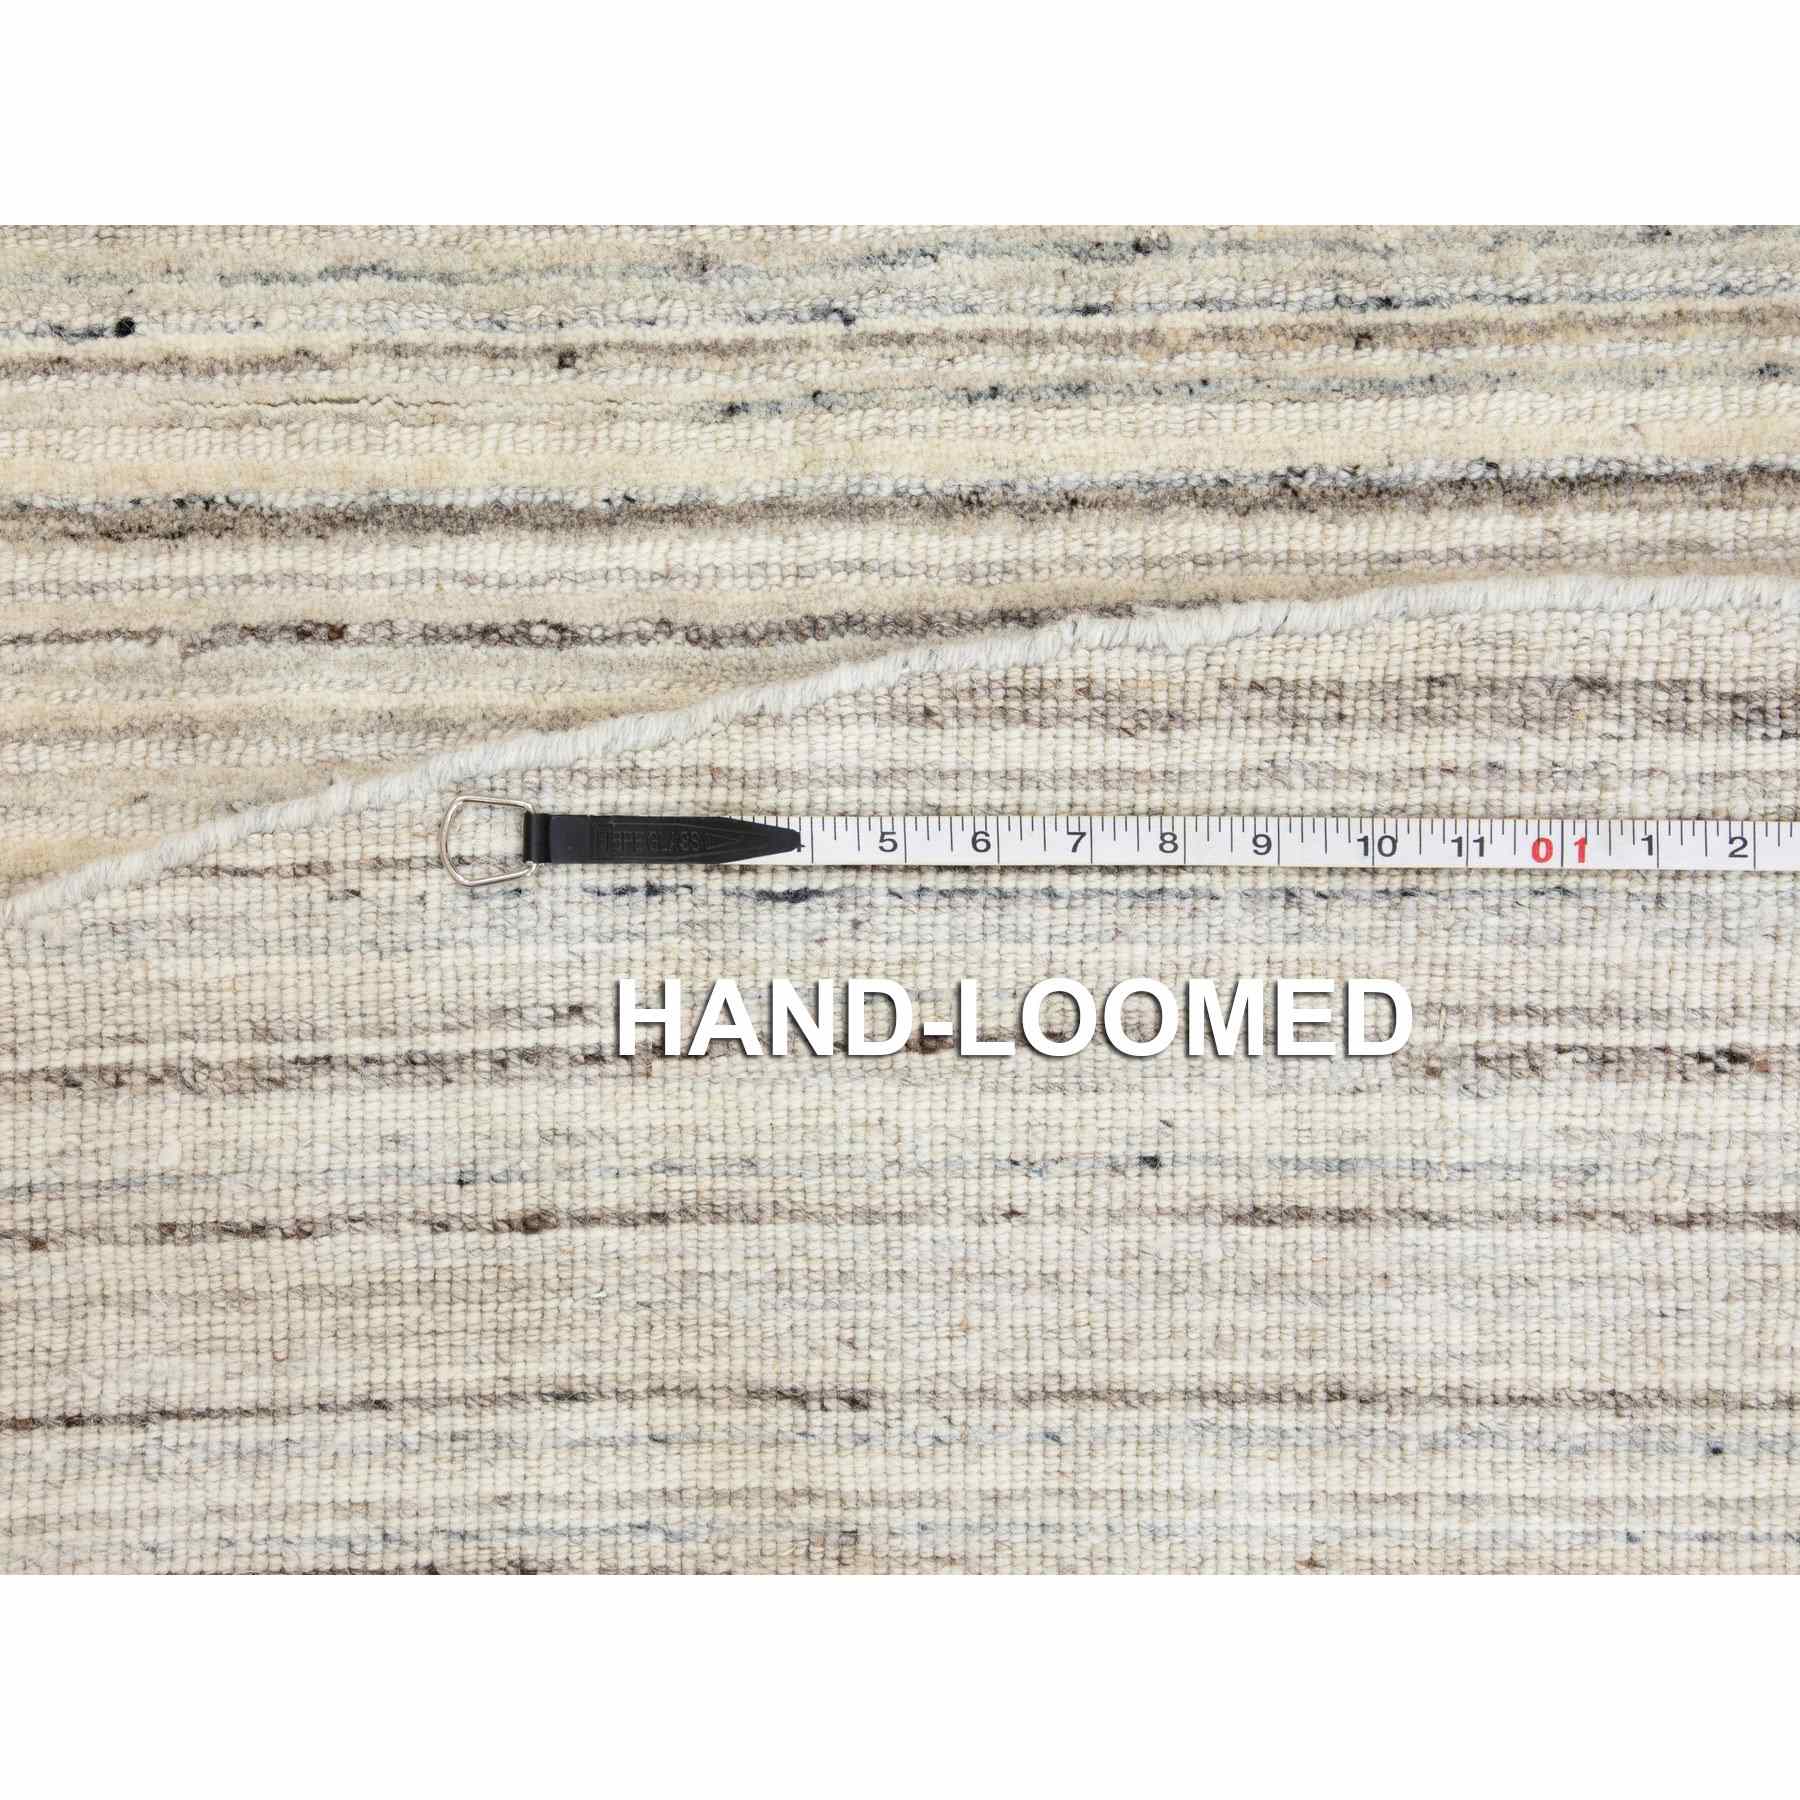 Hand-Loomed-Hand-Loomed-Rug-291765